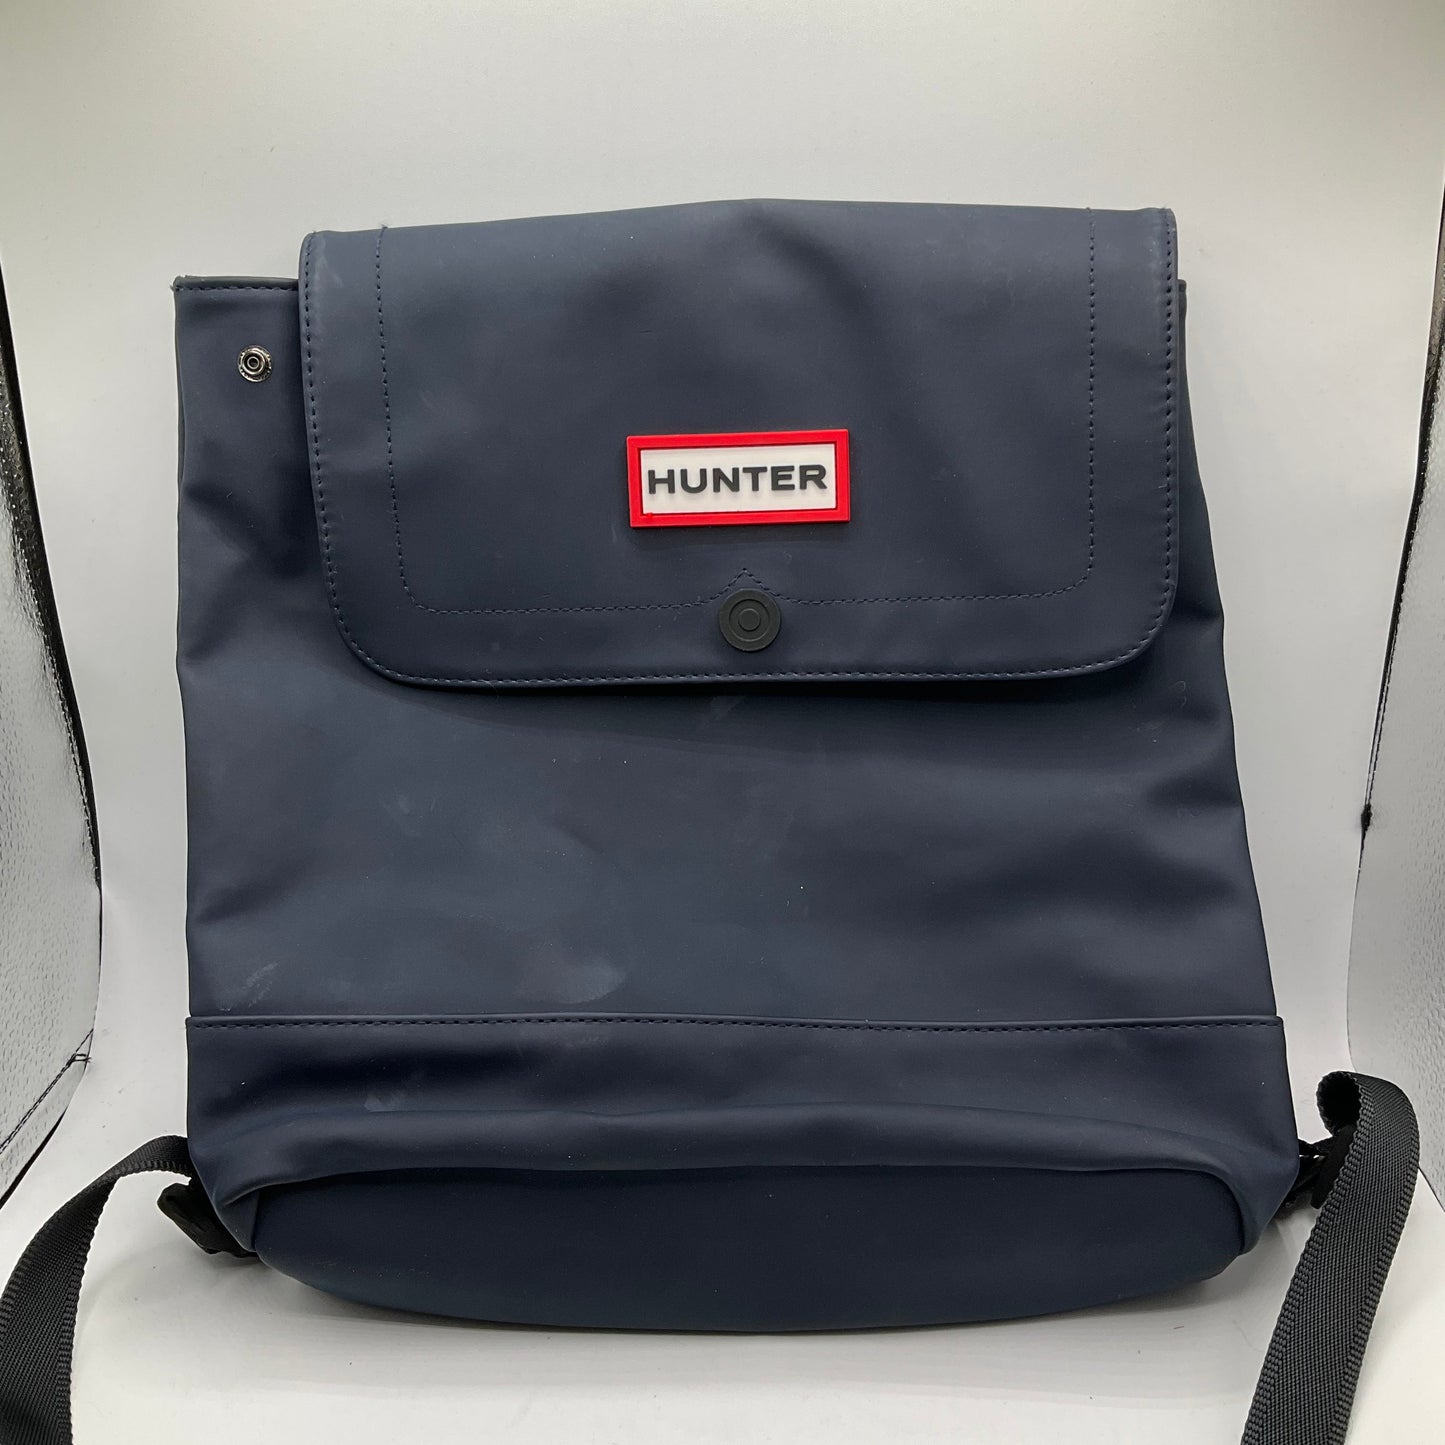 Blue Backpack Target, Size Medium